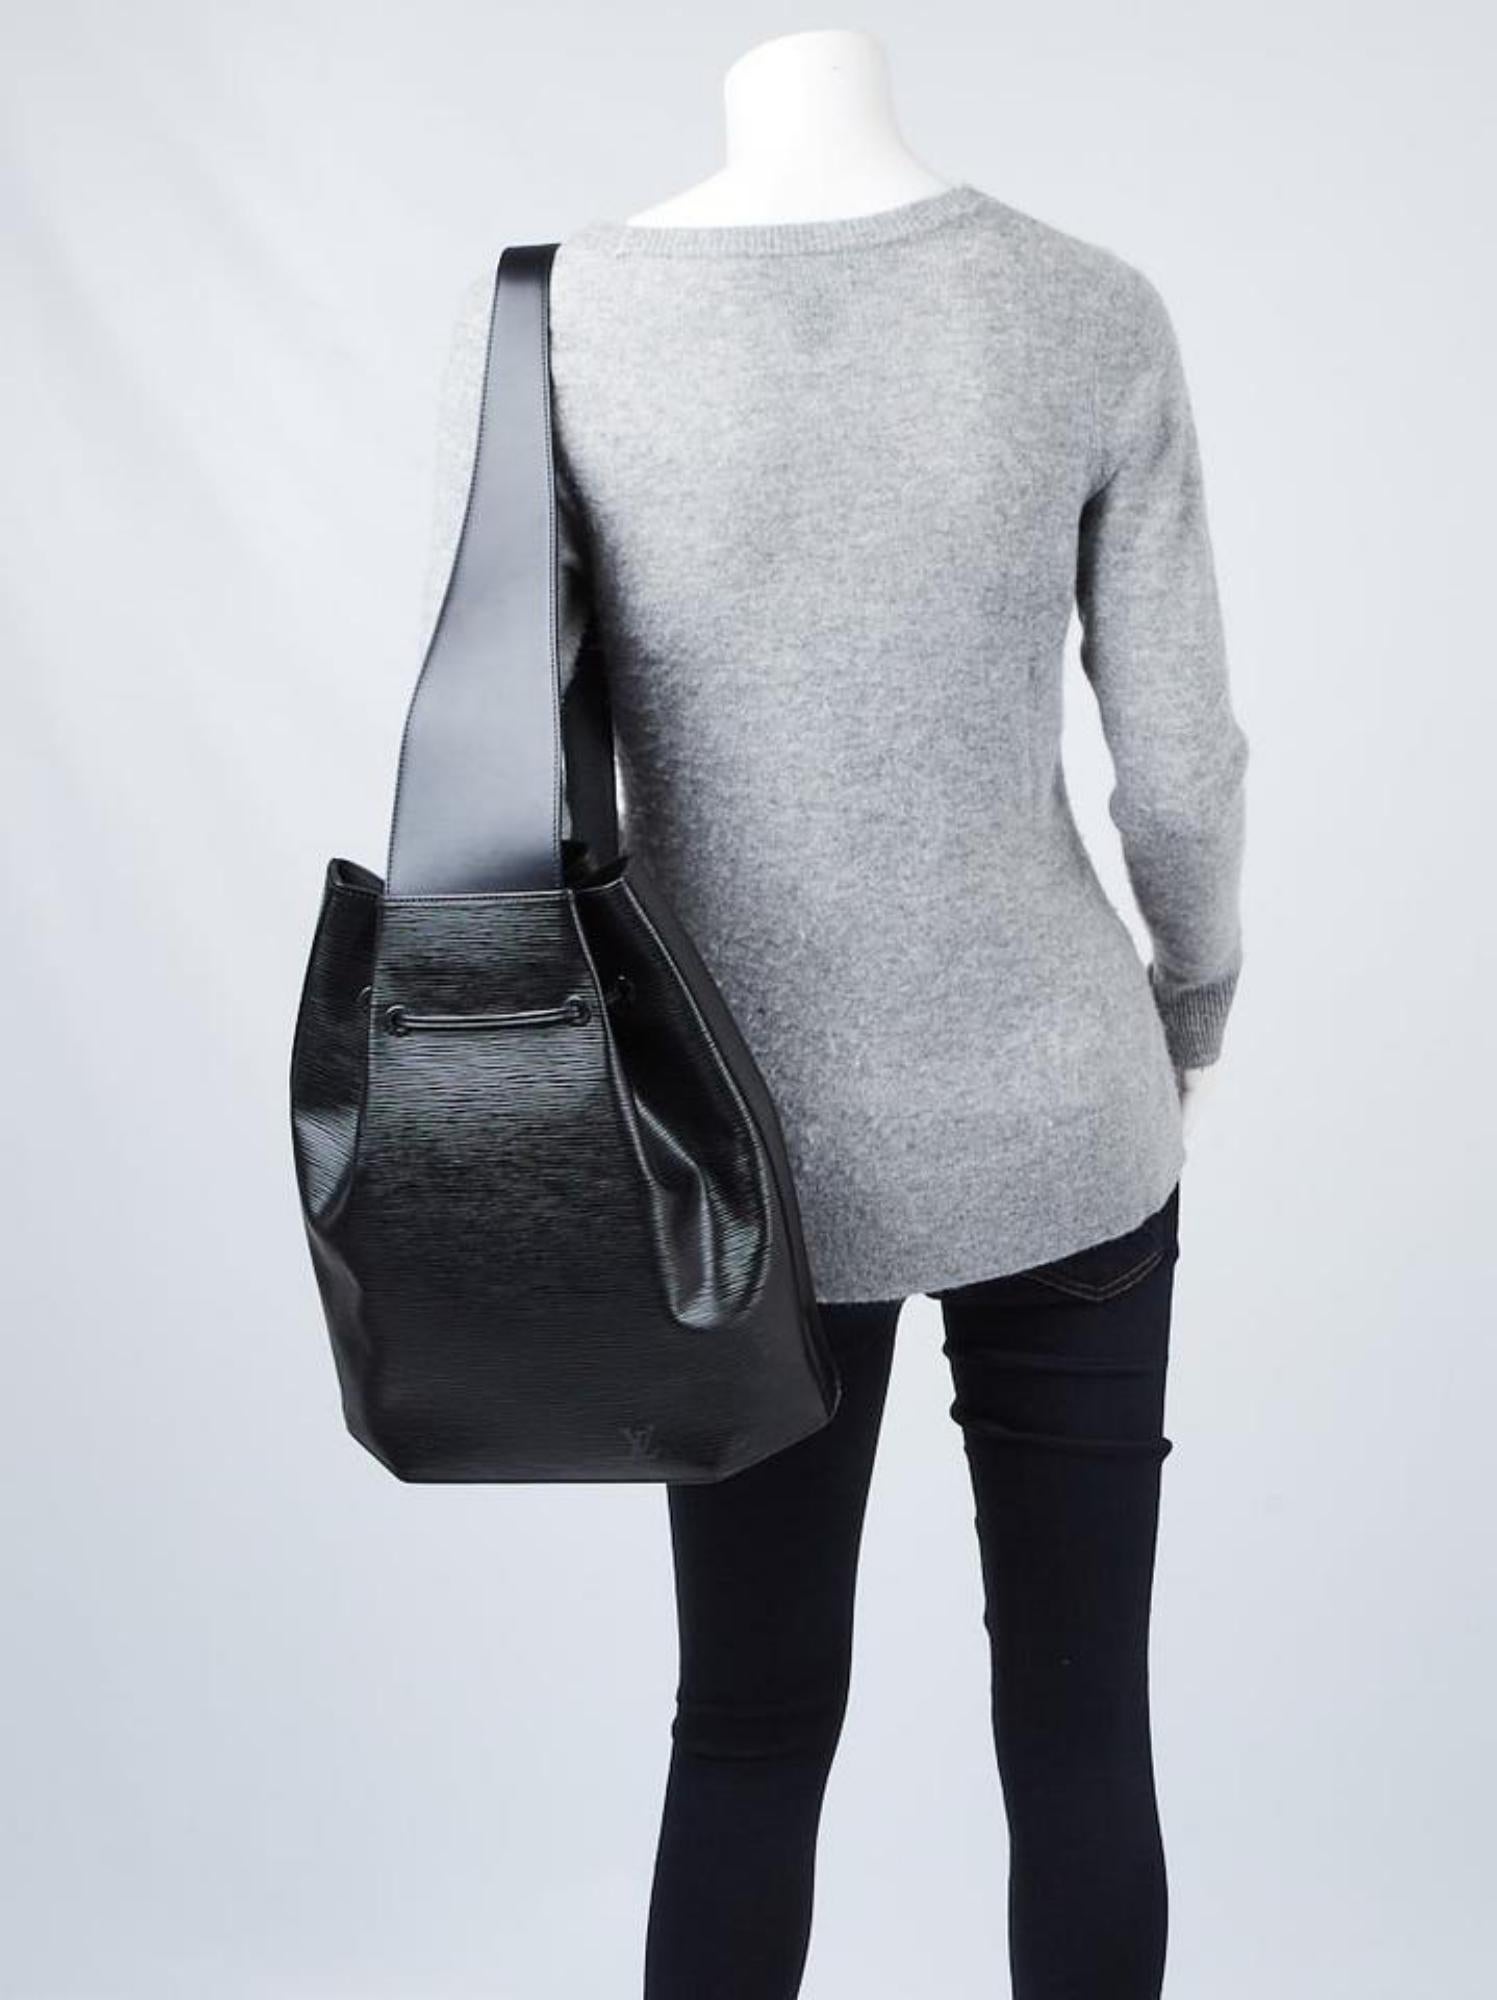 Louis Vuitton Black Epi Leather Noir Sac a Dos Sling Backpack with Pouch 1LV1103
Code de date/Numéro de série : VI0958
Fabriqué en : France
Dimensions : Longueur : 11.5 